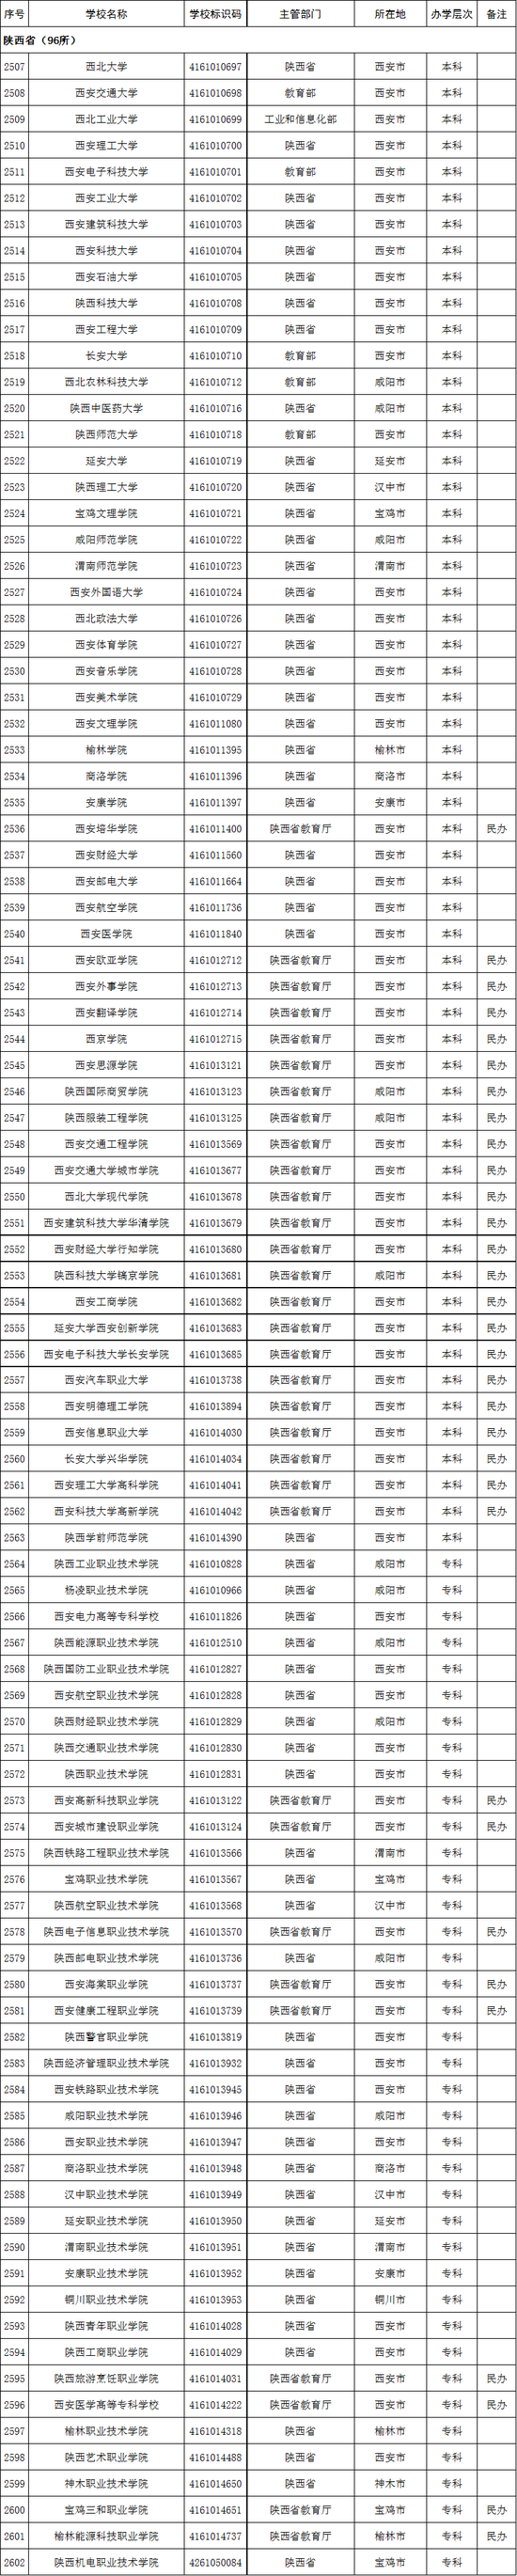 陕西省2020年高校名单(96所)